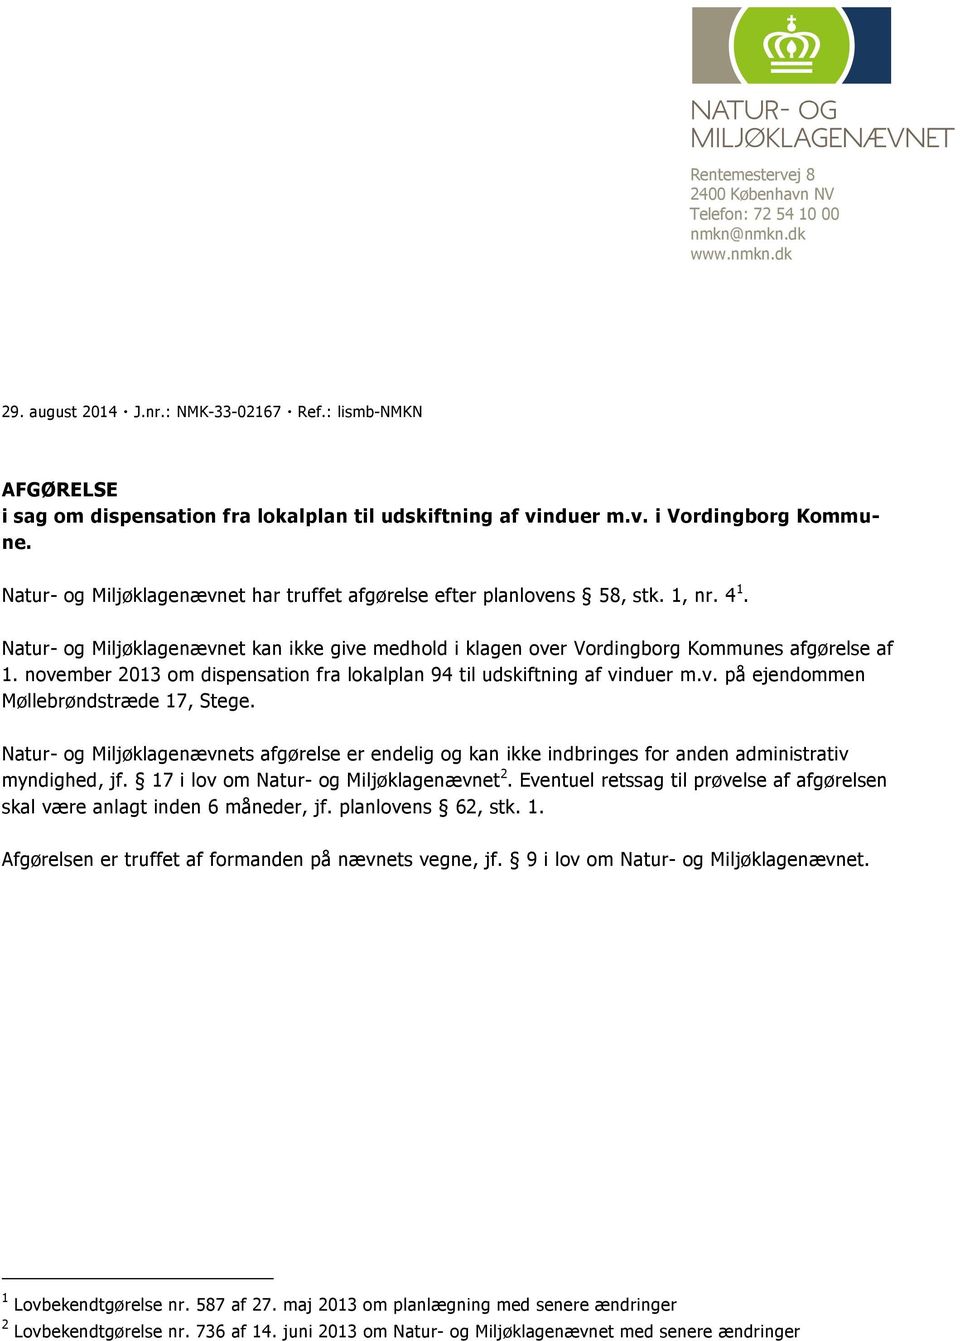 Natur- og Miljøklagenævnet kan ikke give medhold i klagen over Vordingborg Kommunes afgørelse af 1. november 2013 om dispensation fra lokalplan 94 til udskiftning af vinduer m.v. på ejendommen Møllebrøndstræde 17, Stege.